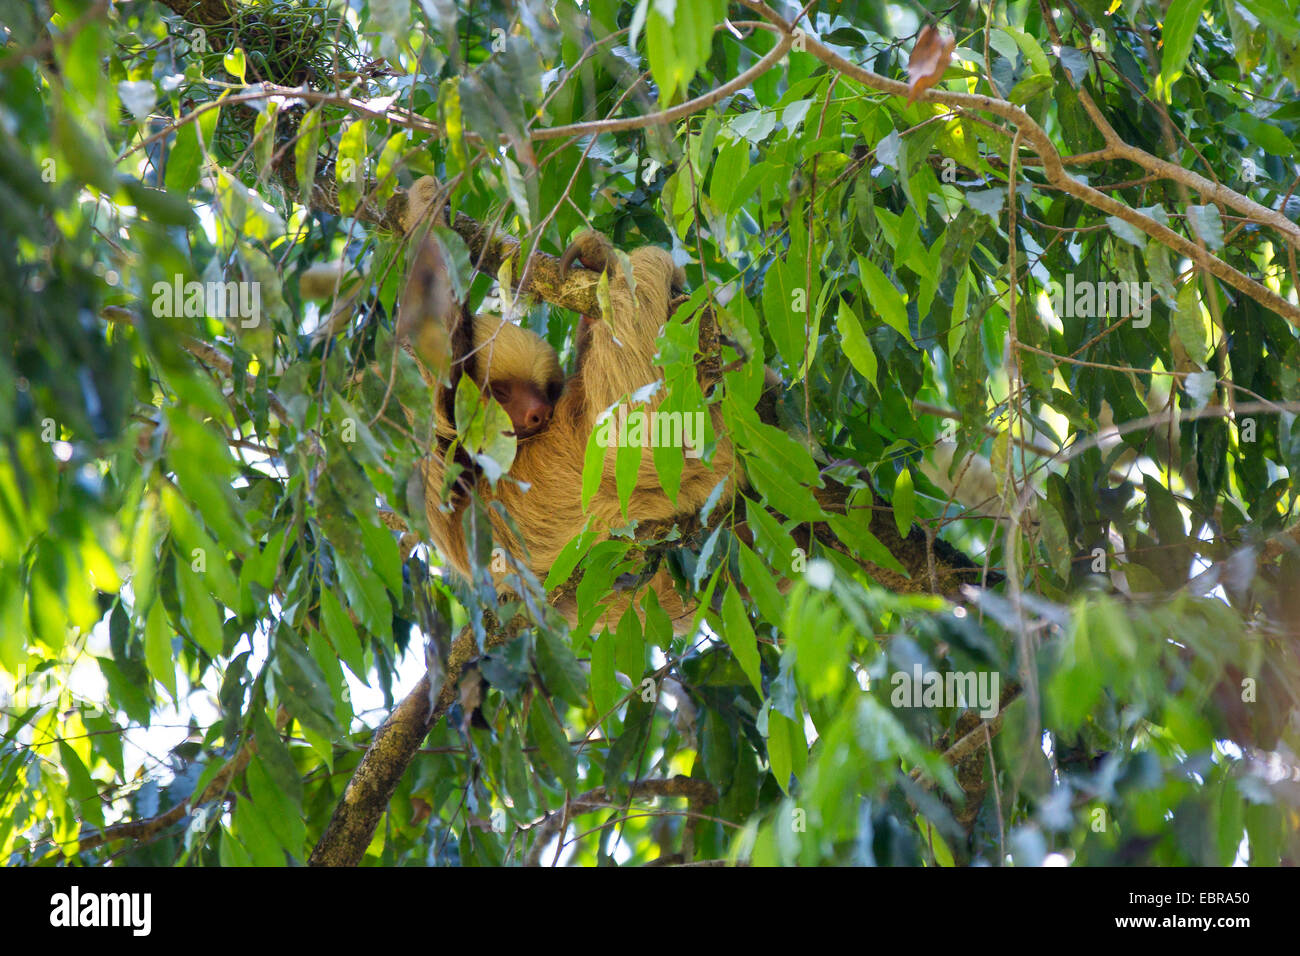 Deux Linné-toed sloth (Choloepus didactylus), suspendu à une branche d'une couronne de l'arbre, le Costa Rica Banque D'Images